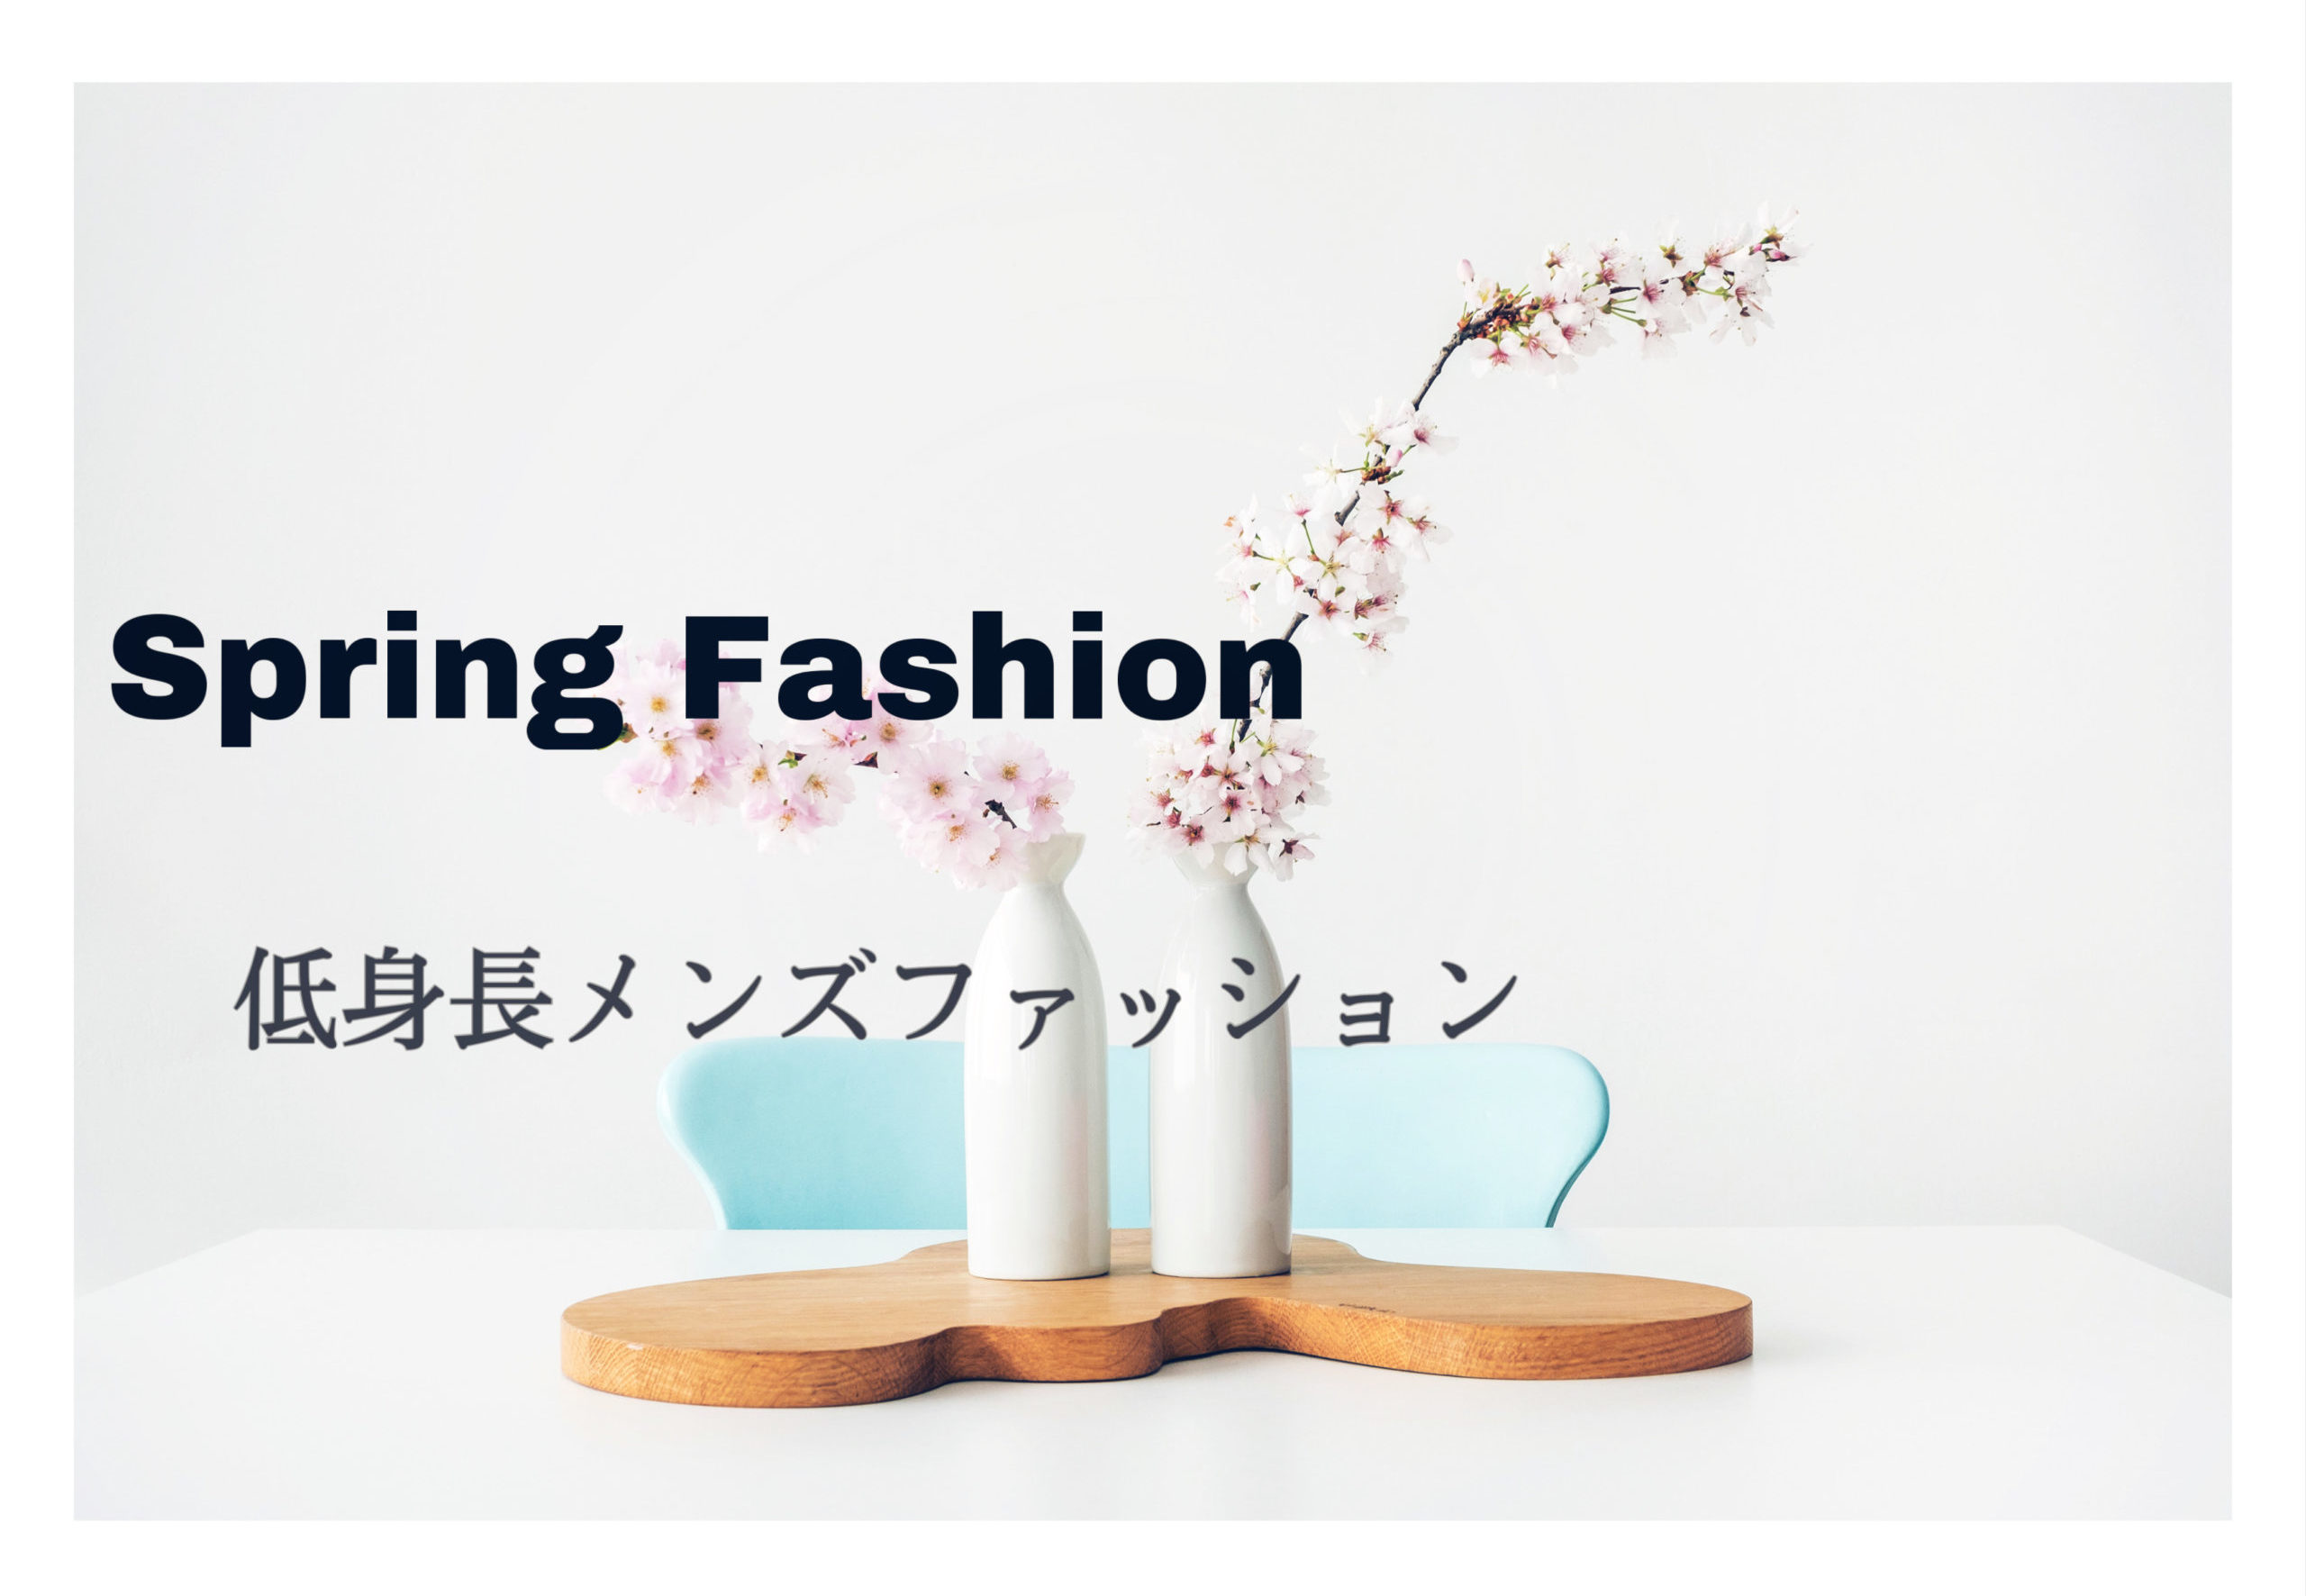 春のオシャレ 低身長メンズで似合うファッション構築法とは Small 背が低いからこそオシャレになれるブログ